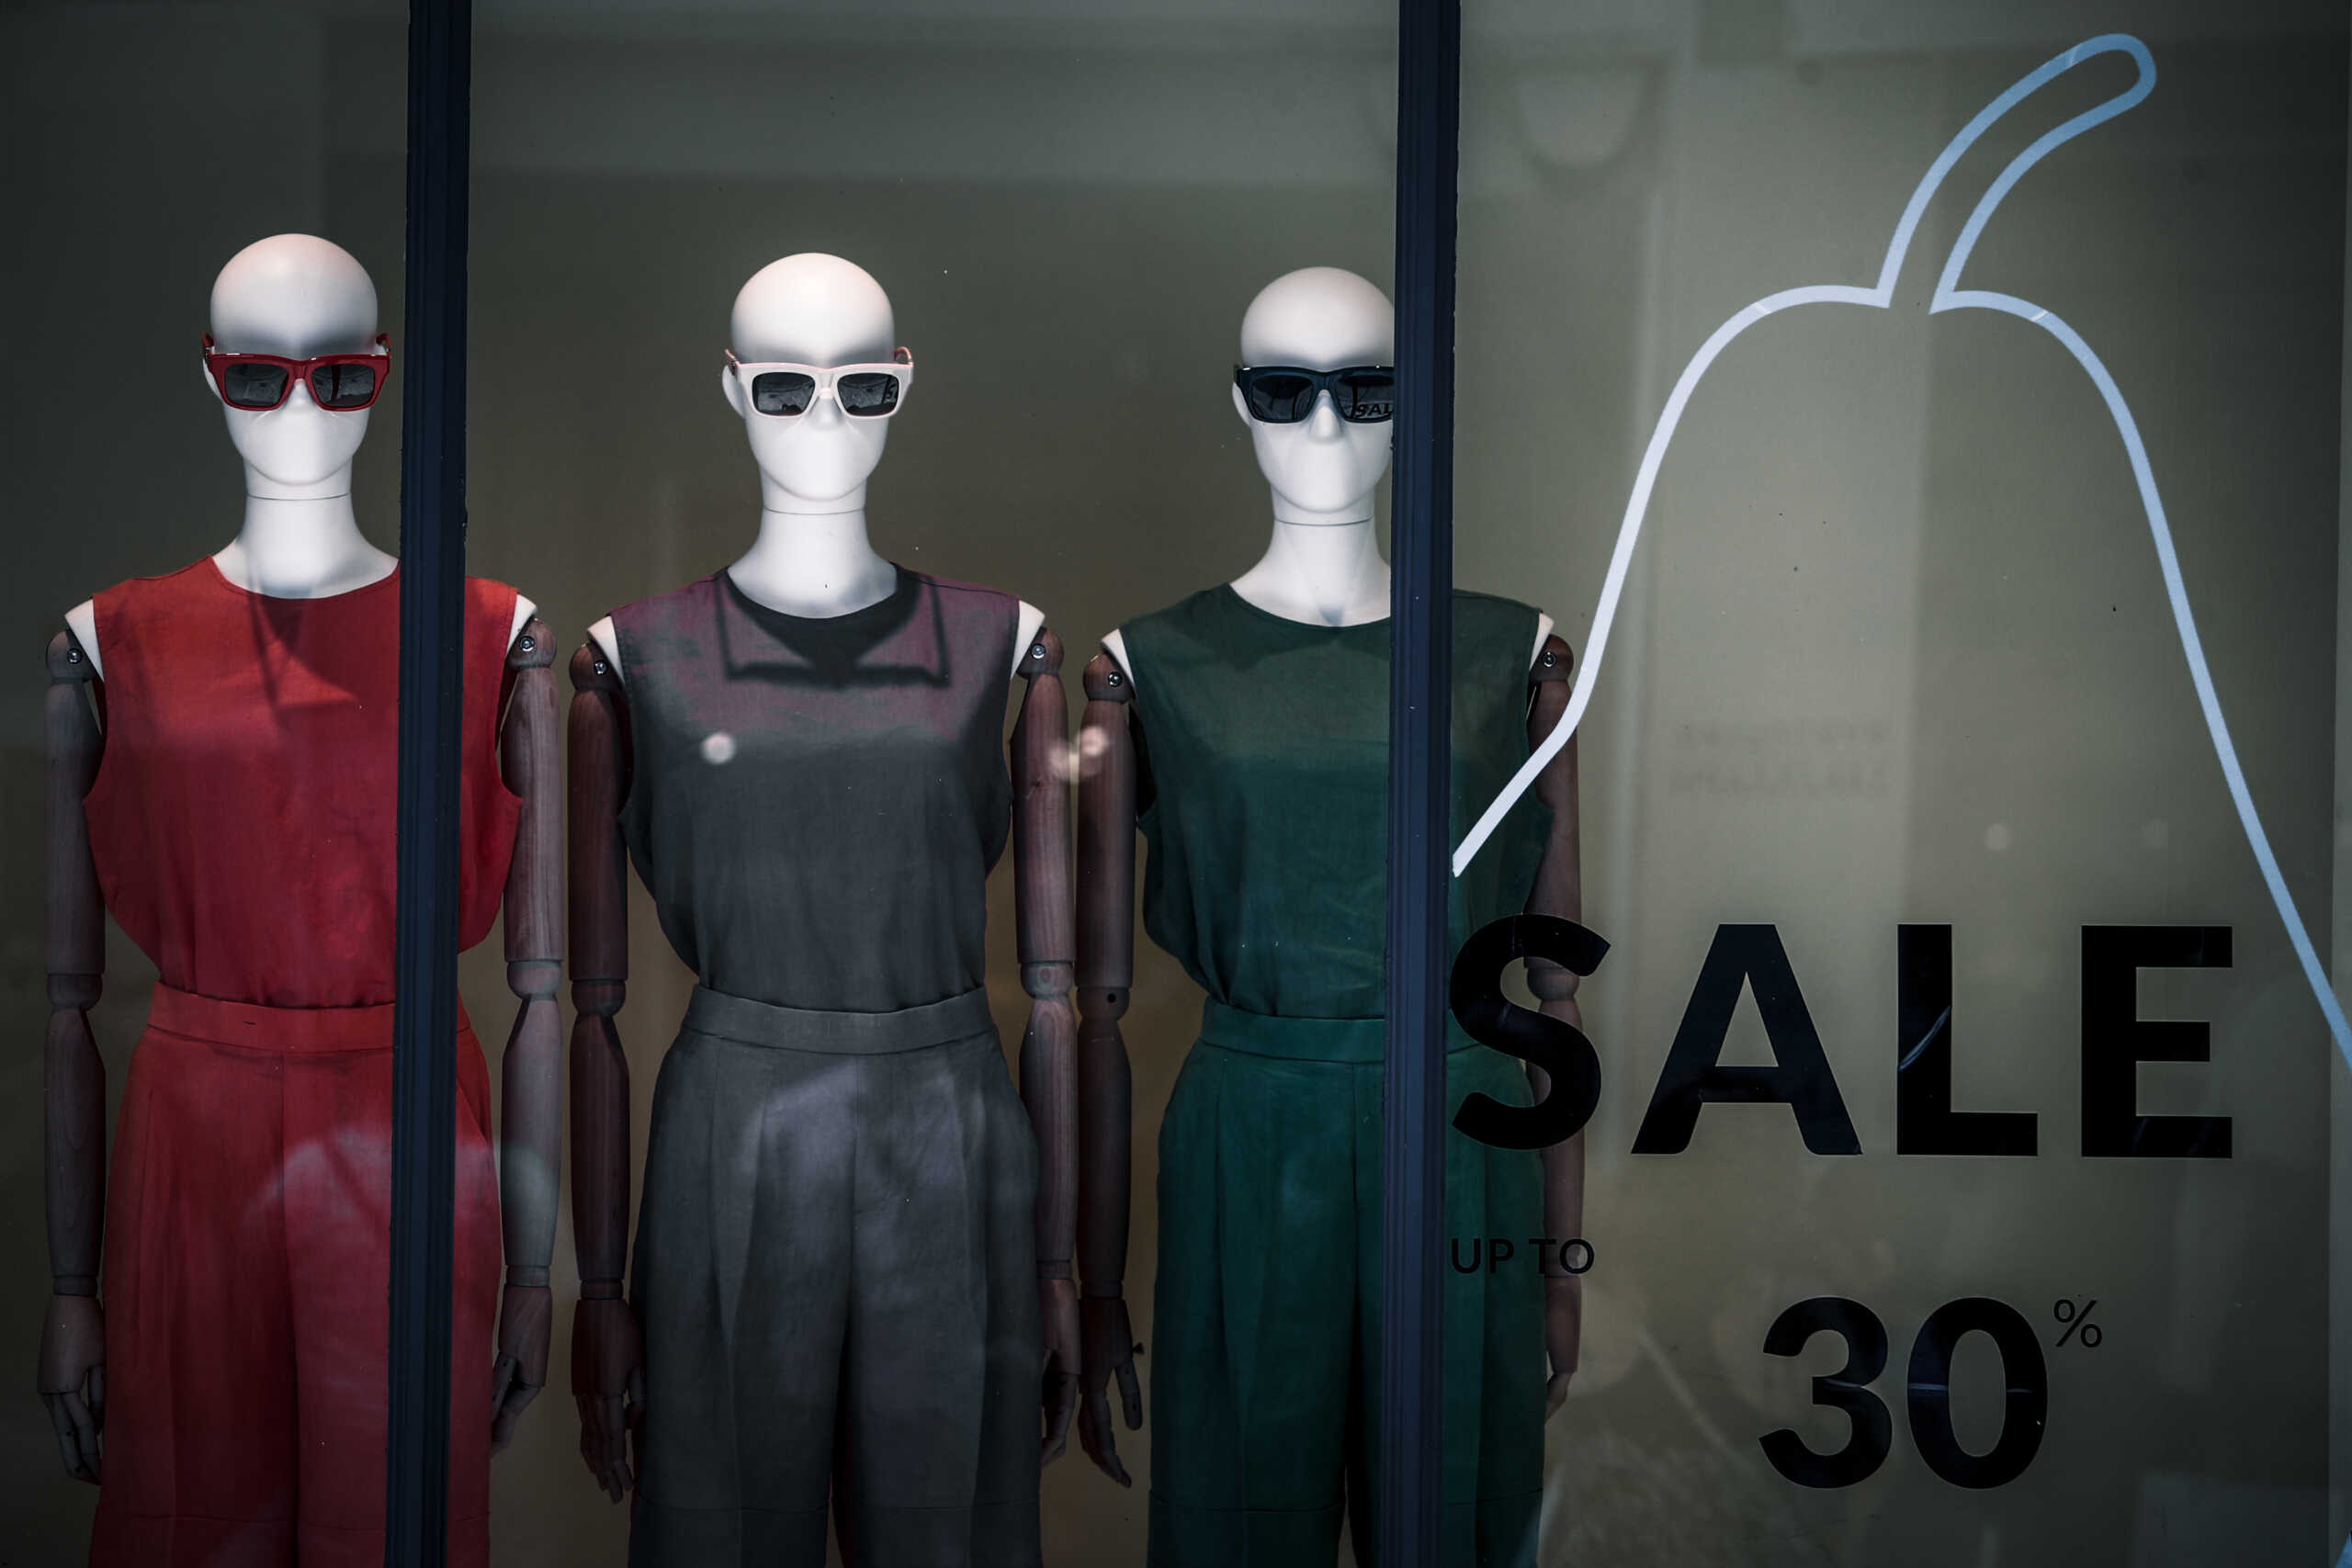 Πολωνία: Έκλεψε κατάστημα με ρούχα και μετά παρίστανε πως ήταν κούκλα βιτρίνας